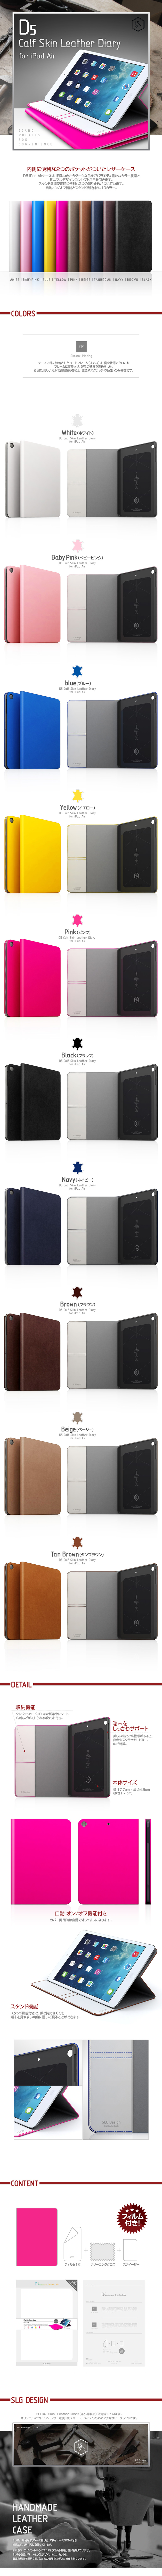 iPadAirケース D5 Calf Skin Leather Diary